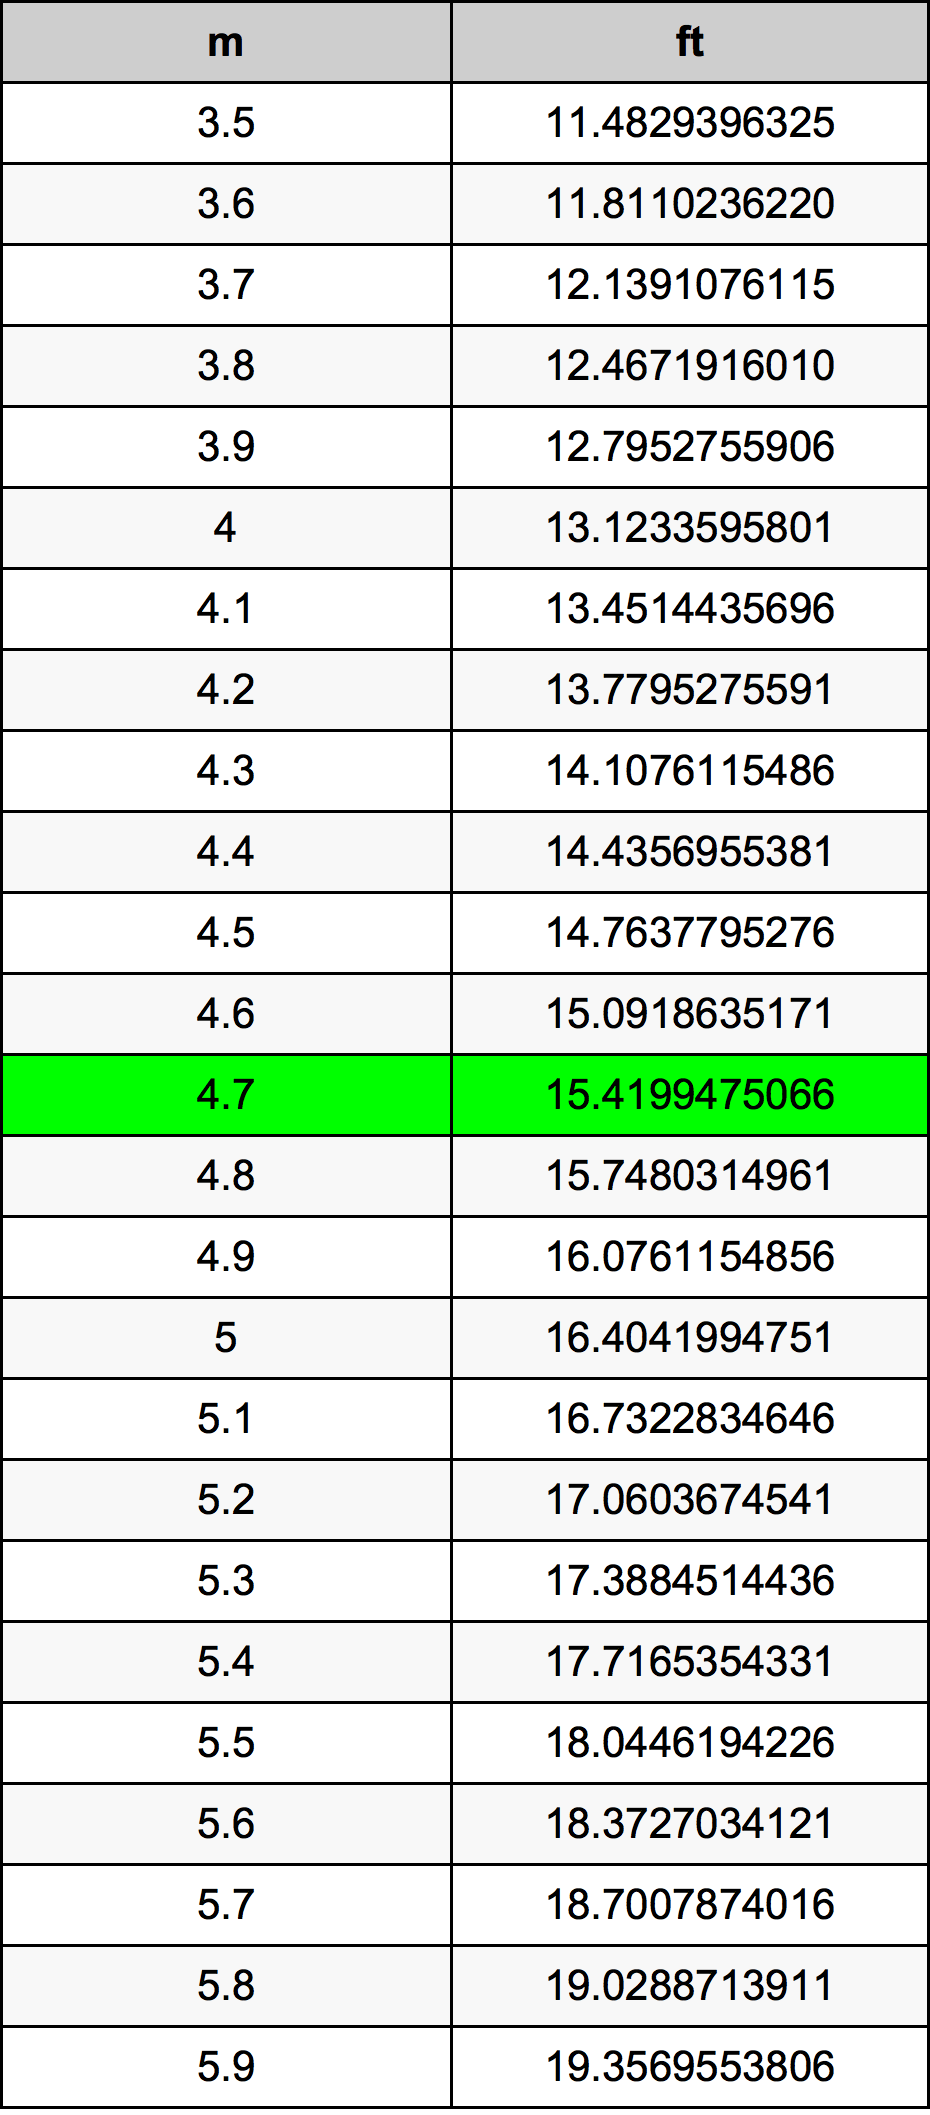 4.7 Metru tabelul de conversie